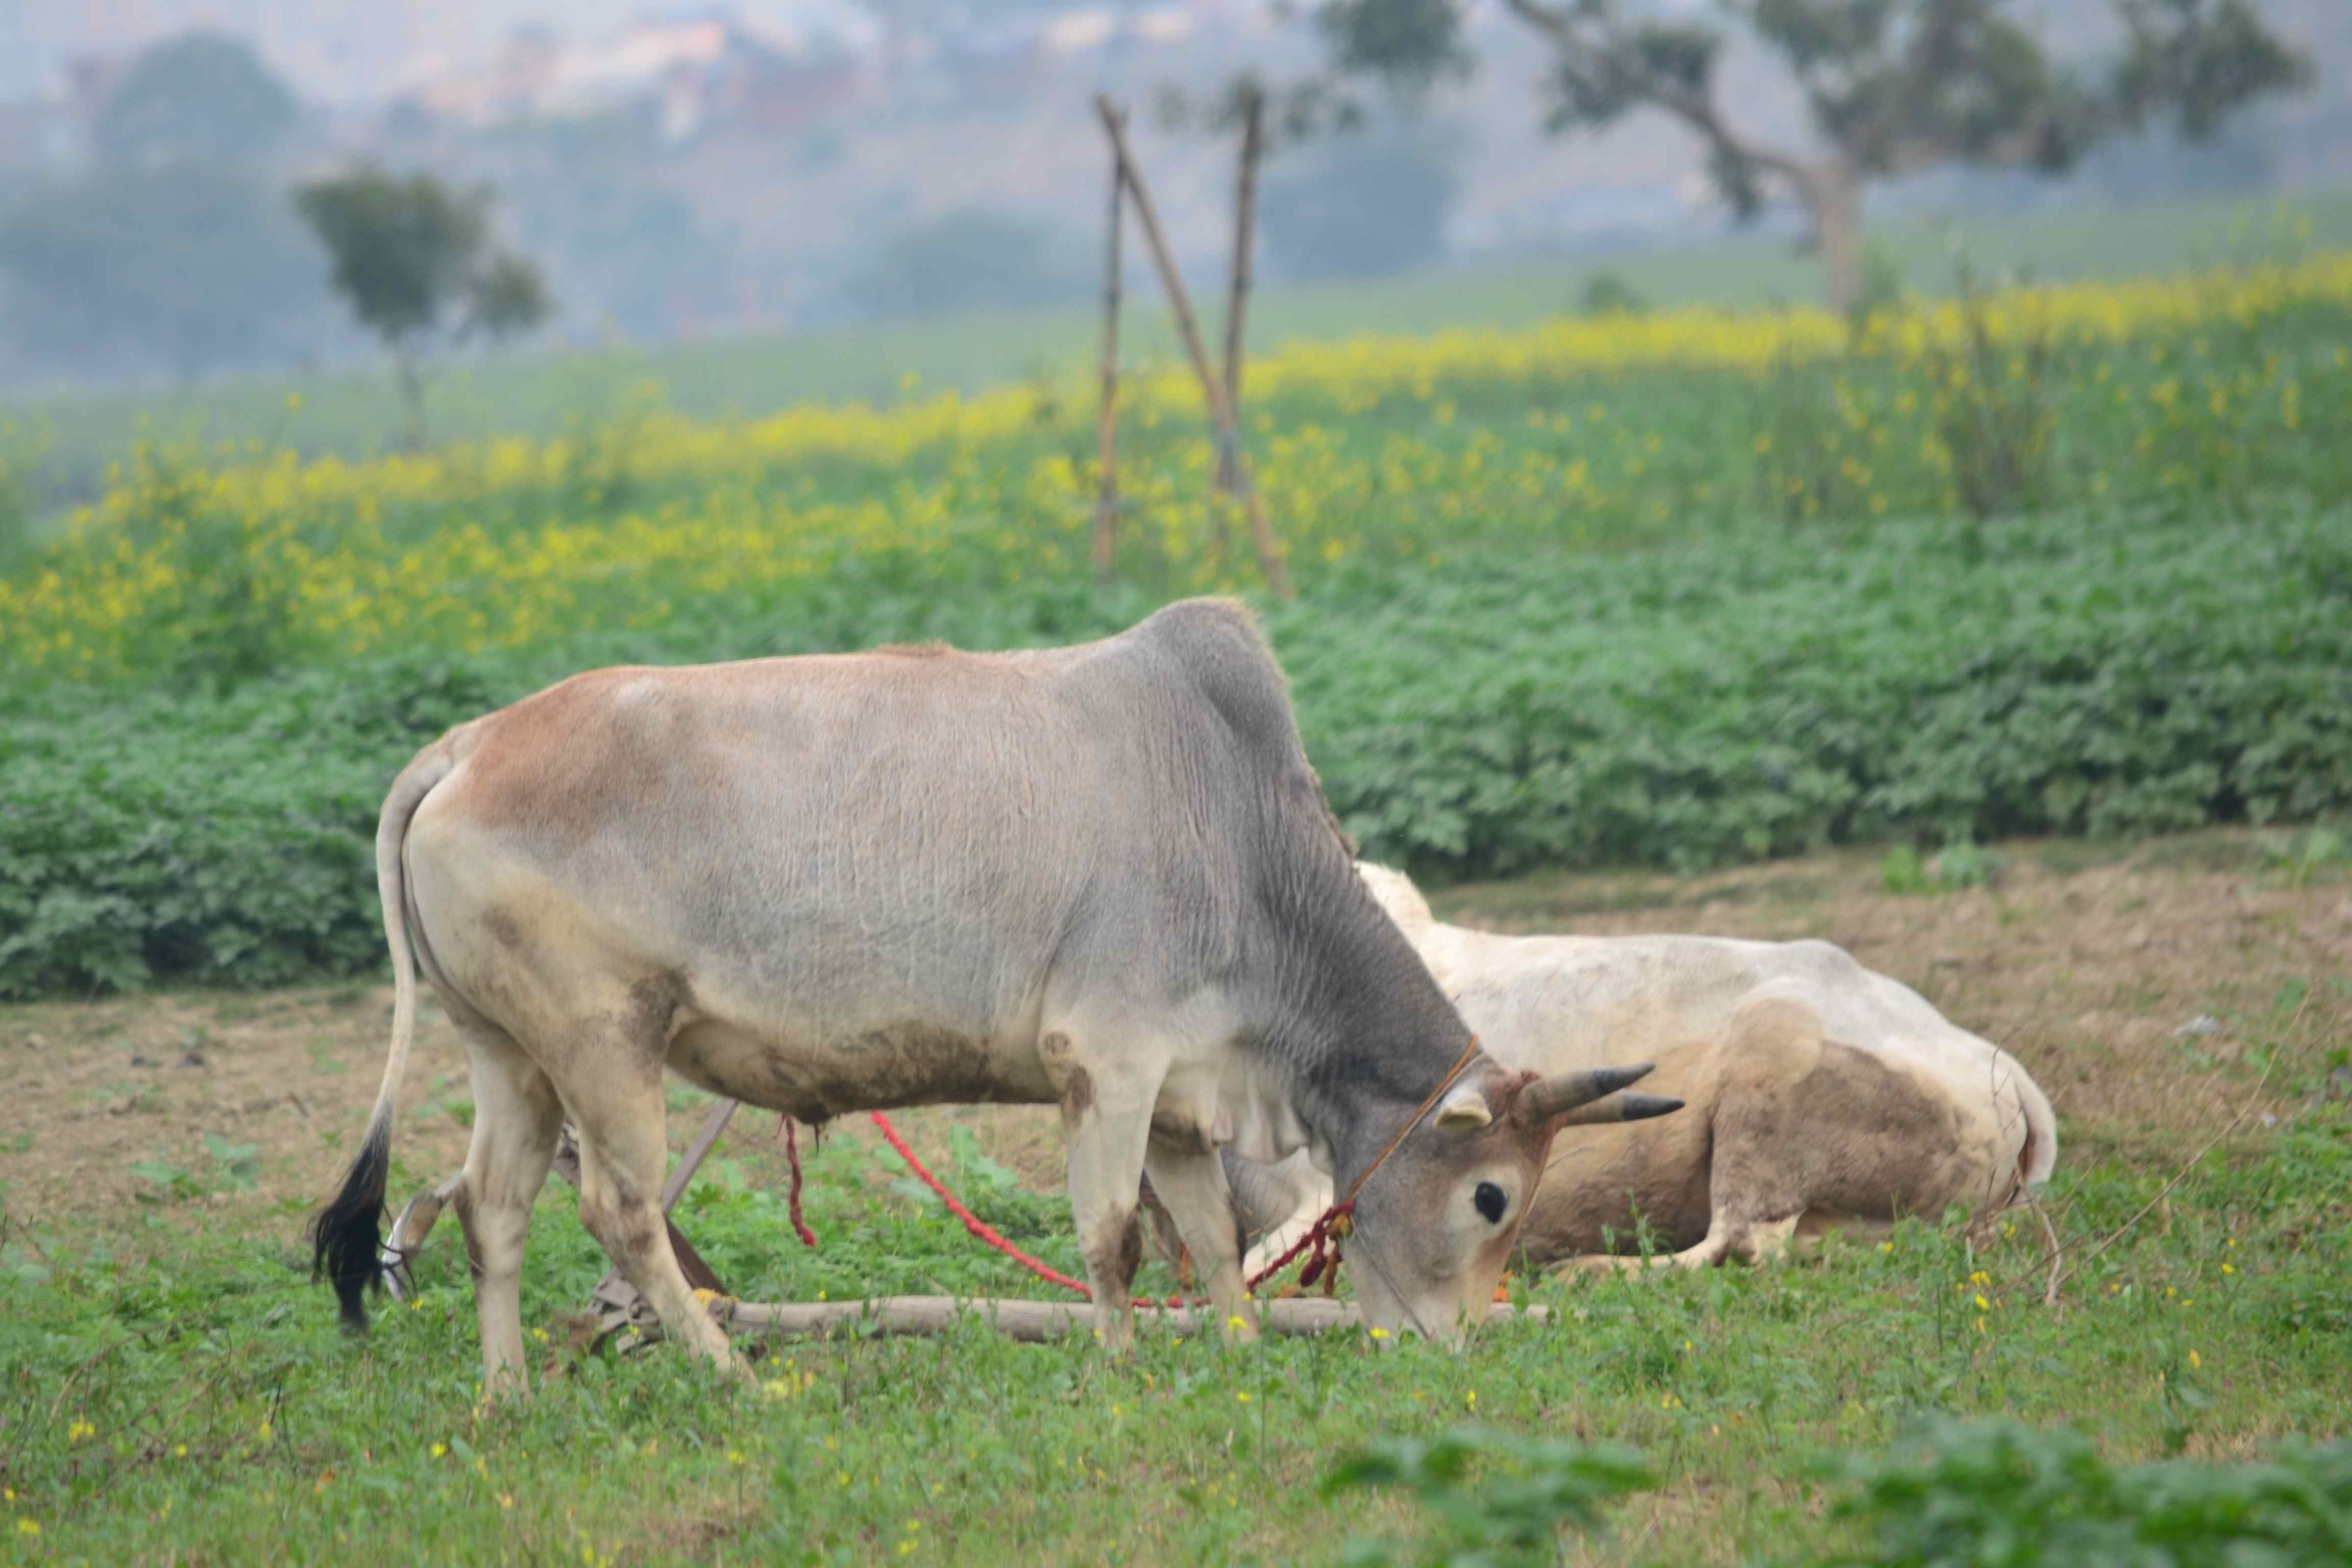 गुजरात के गोसेवा आयोग ने शुरू किया गाय पर्यटन